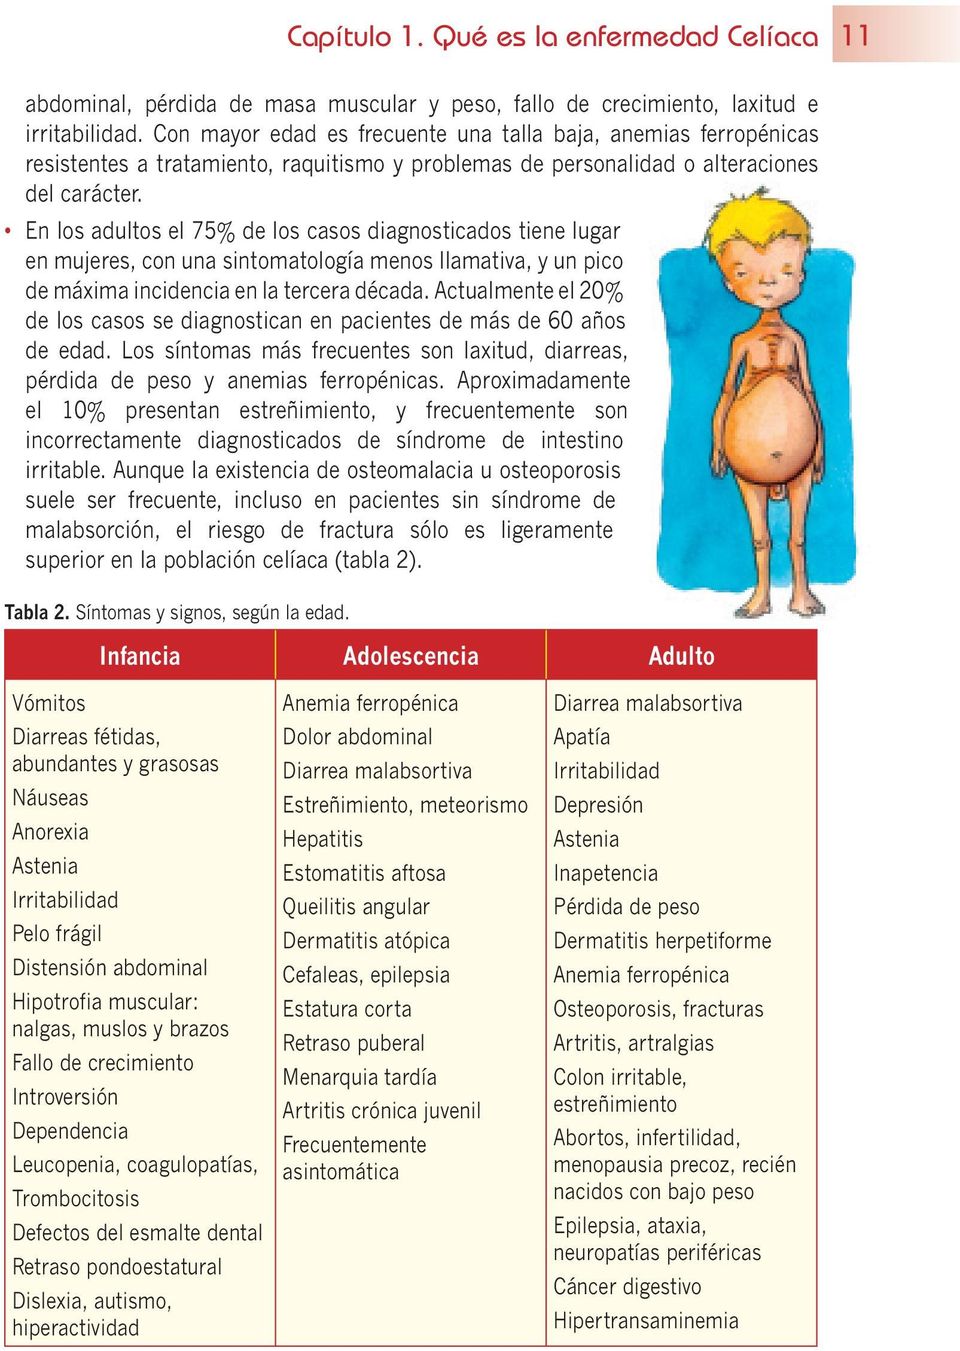 Enfermedades asociadas Dermatitis herpetiforme Síndrome de Down Intolerancia a la lactosa Déficit selectivo IgA Enfermedades autoinmunes: Diabetes mellitus I Tiroiditis autoinmunes Enf.